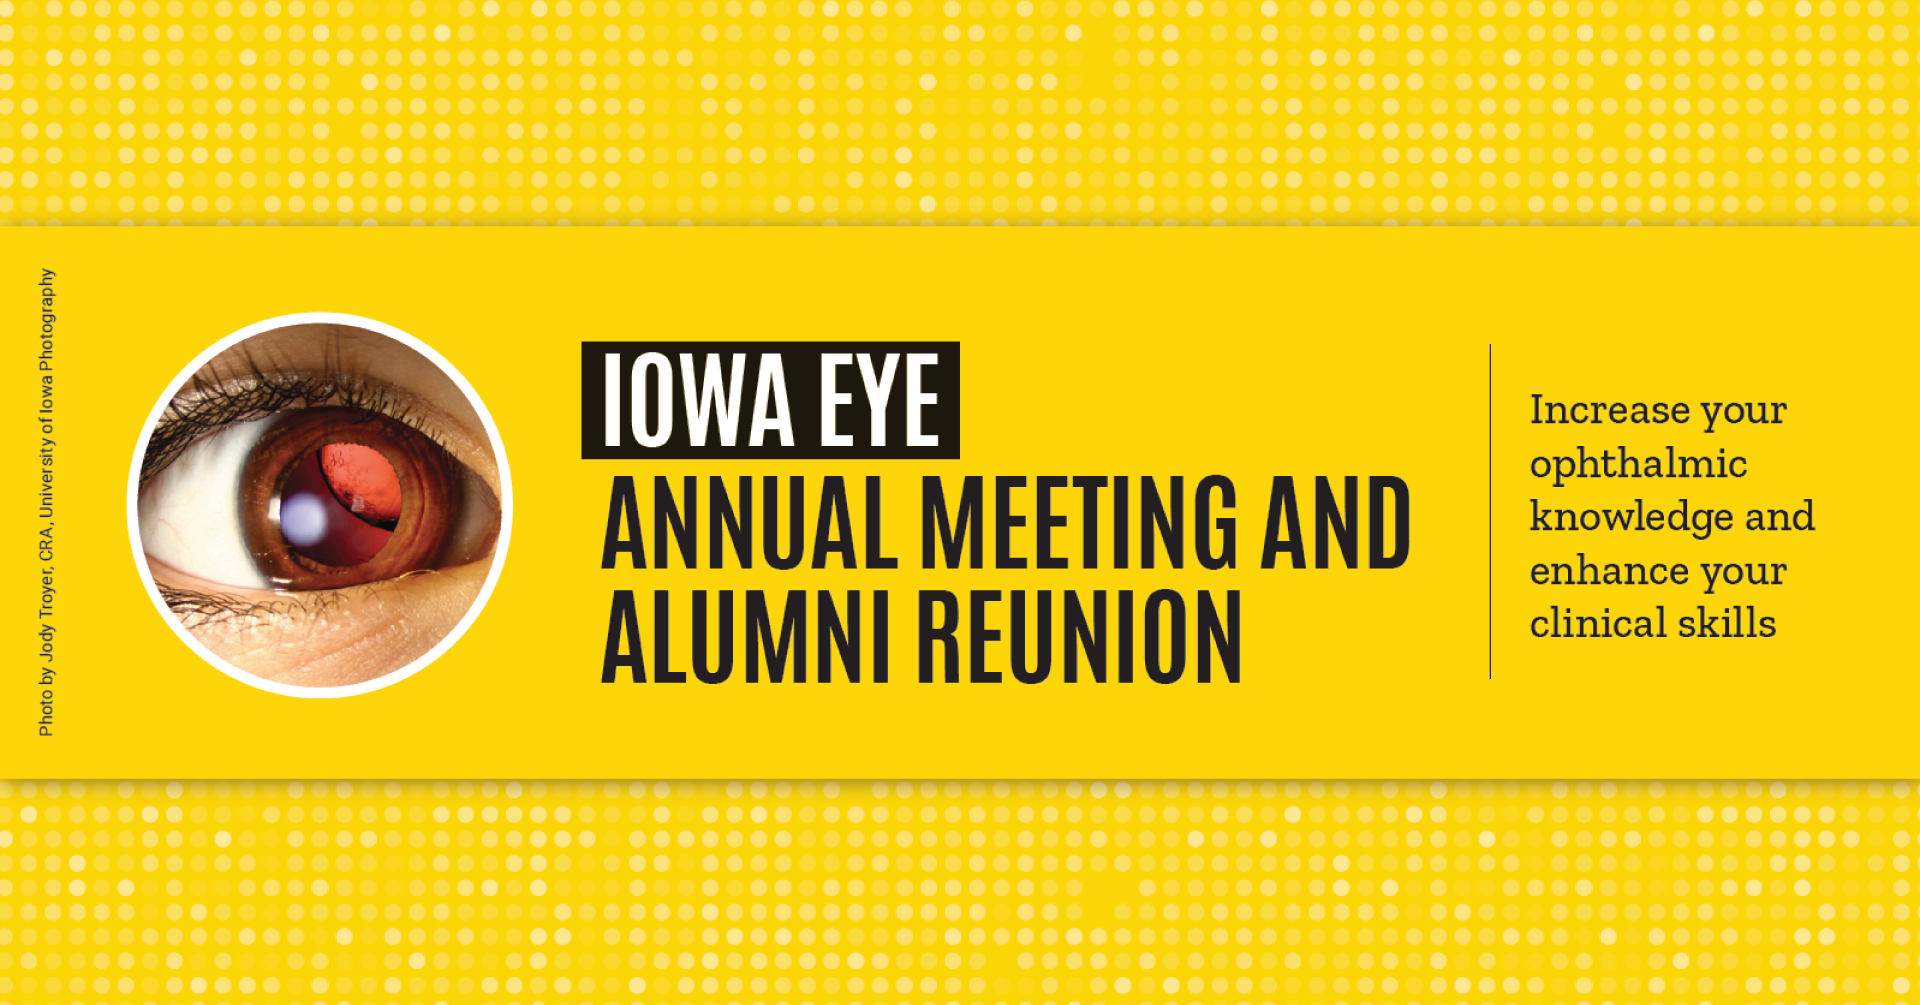 Iowa Eye Annual Meeting and Alumni Reunion